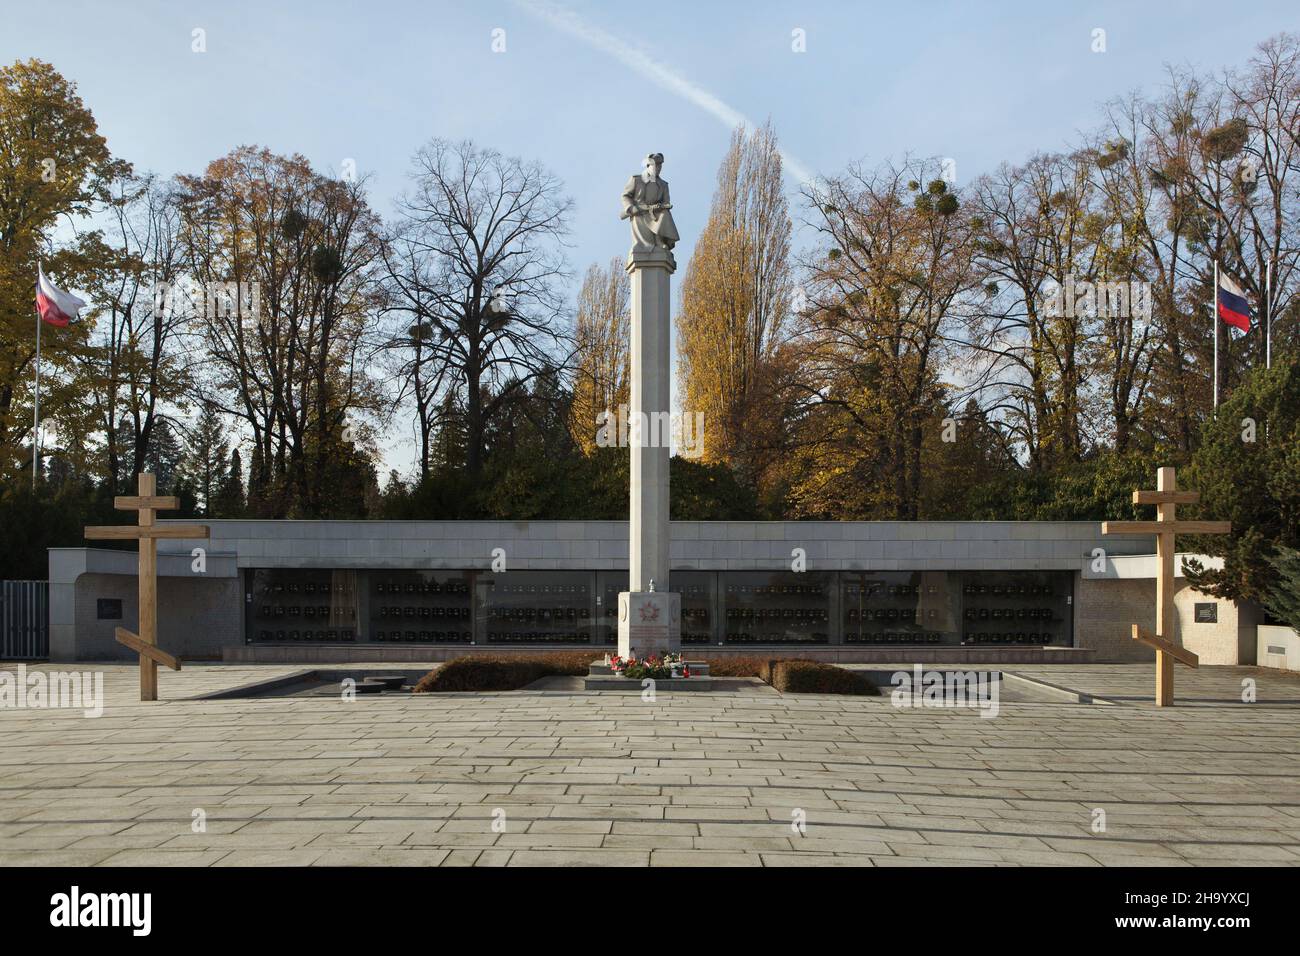 Mémorial de la guerre soviétique au cimetière central (Ústřední hřbitov) de Brno, République tchèque.Les tombes massives de soldats de l'Armée rouge tombés pendant la Seconde Guerre mondiale sont situées sur le terrain du Mémorial de la guerre soviétique. Banque D'Images